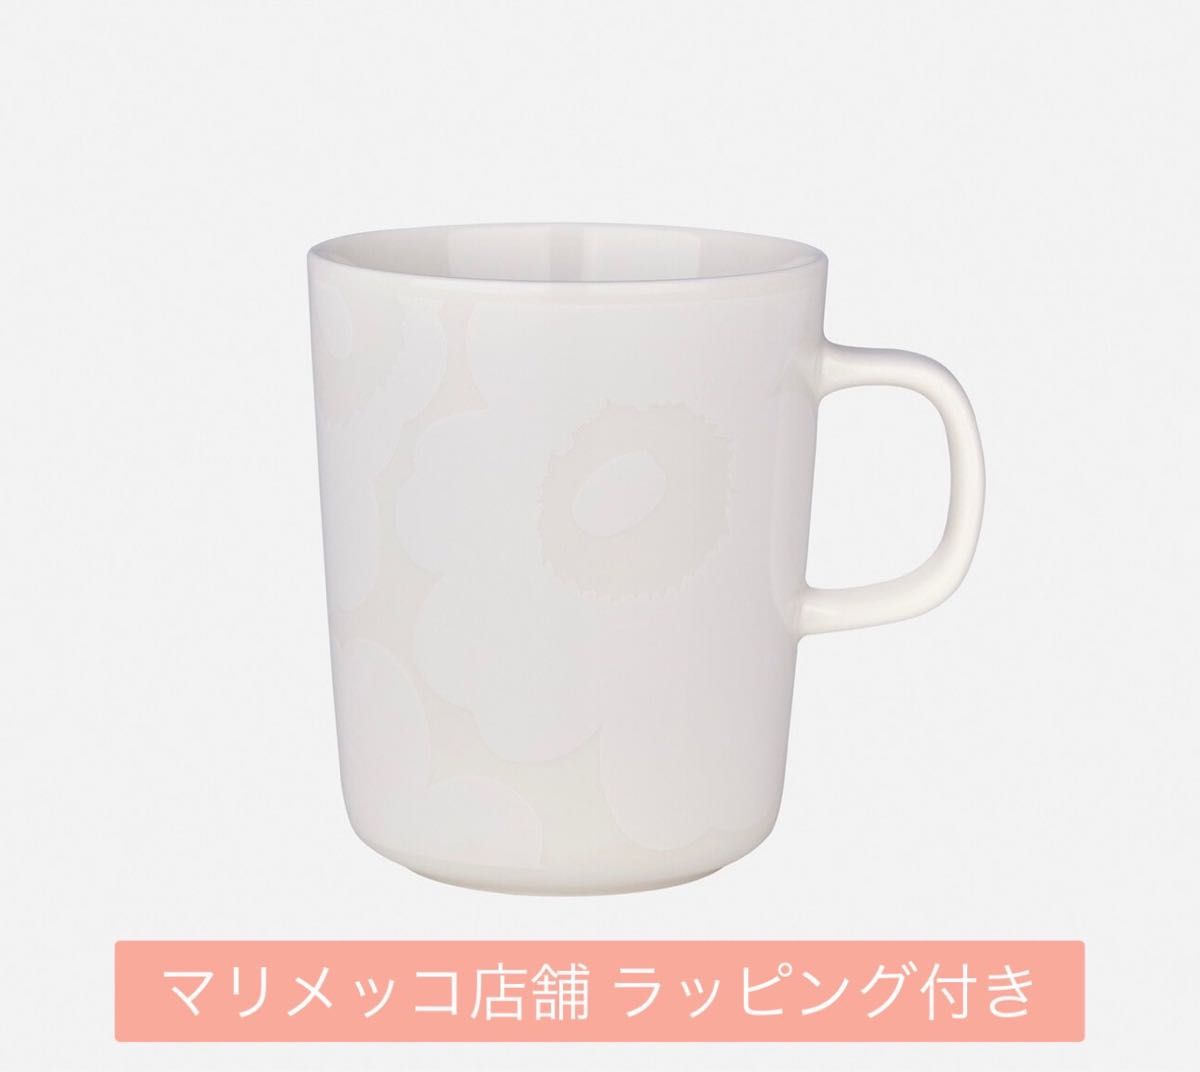 【新品未使用】marimekko マリメッコ ウニッコ マグカップ ホワイト ラッピング付き